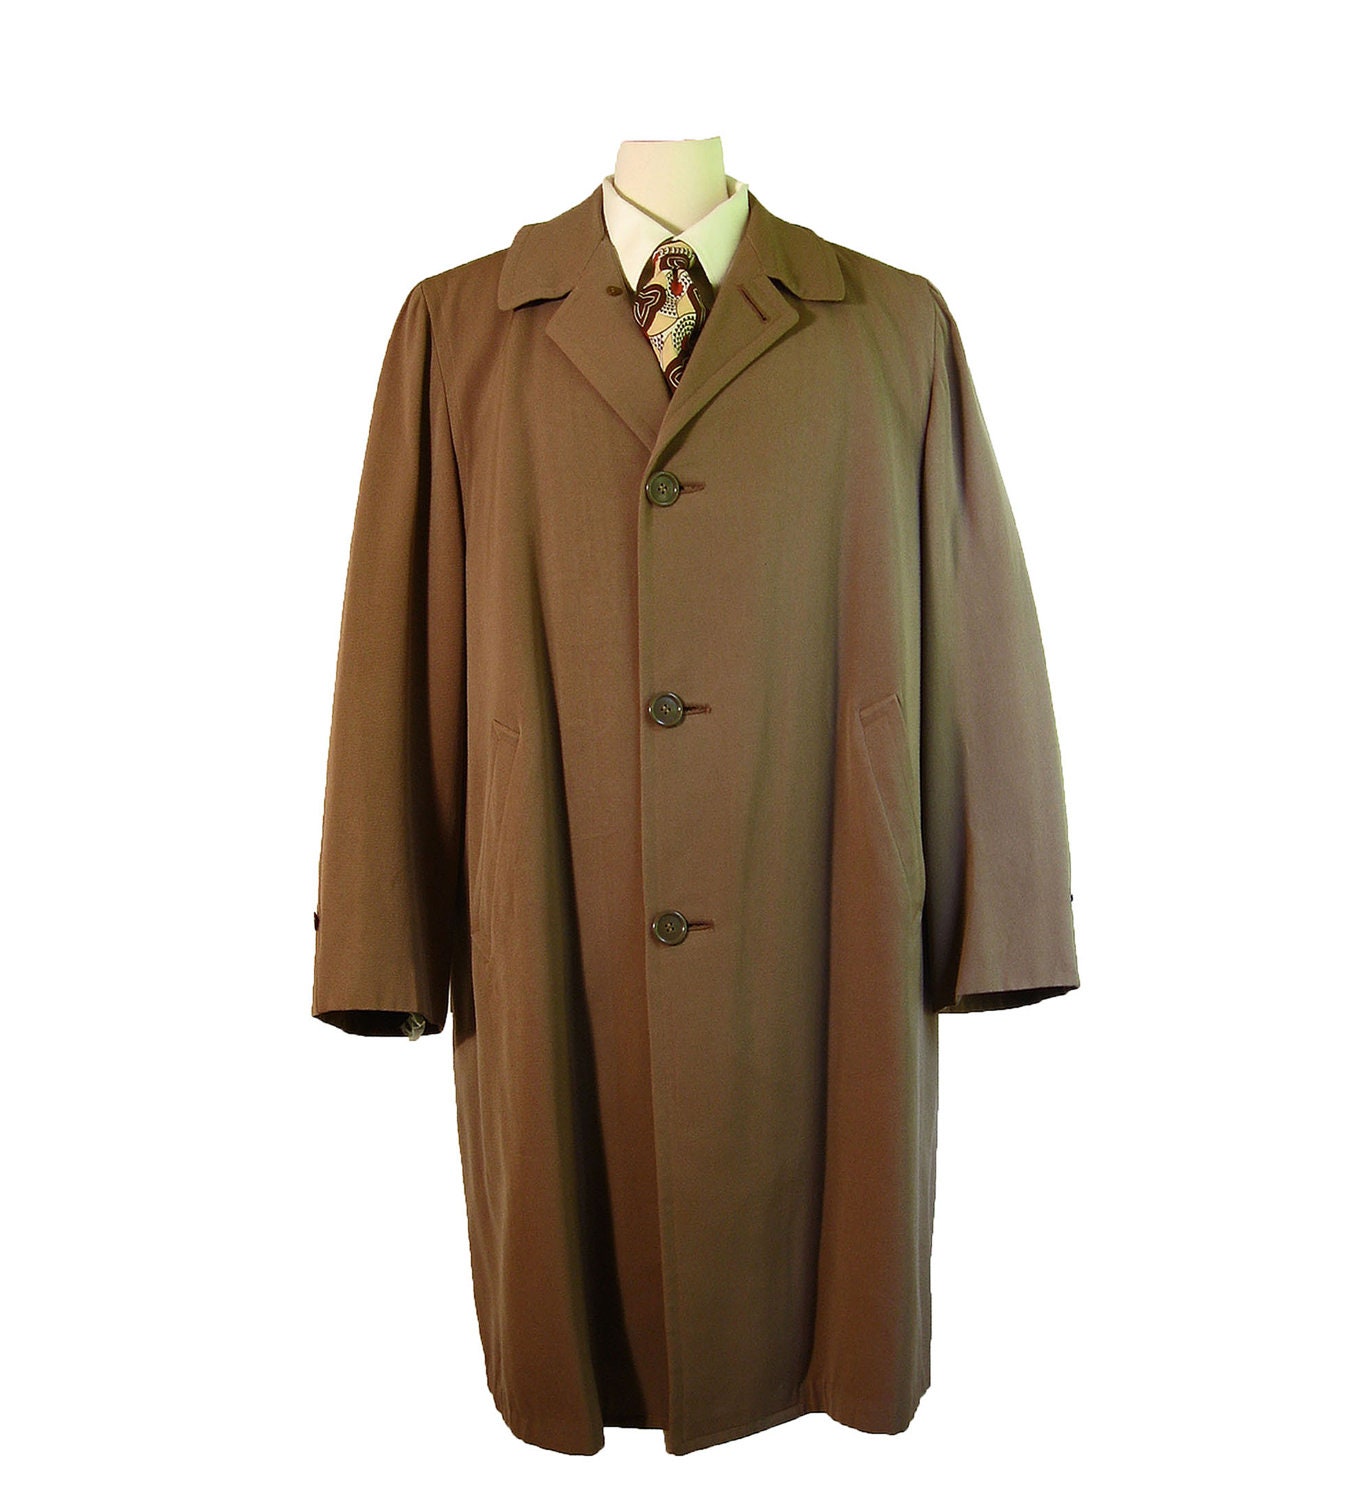 1950s Vintage Mens Top Coat Overcoat by SEASON SKIPPER. Tan